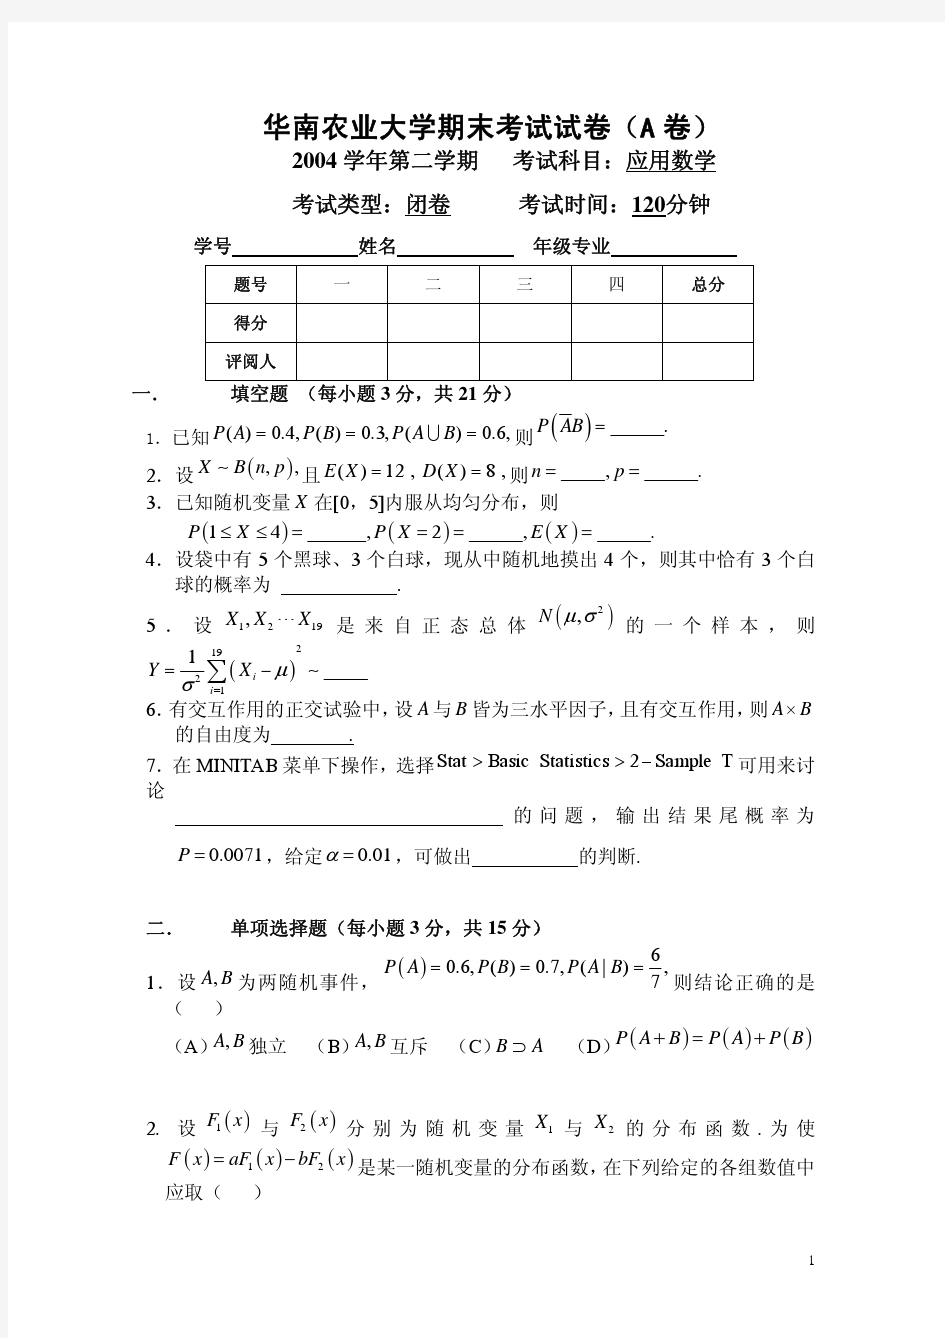 华南农业大学大学数学2考试试卷